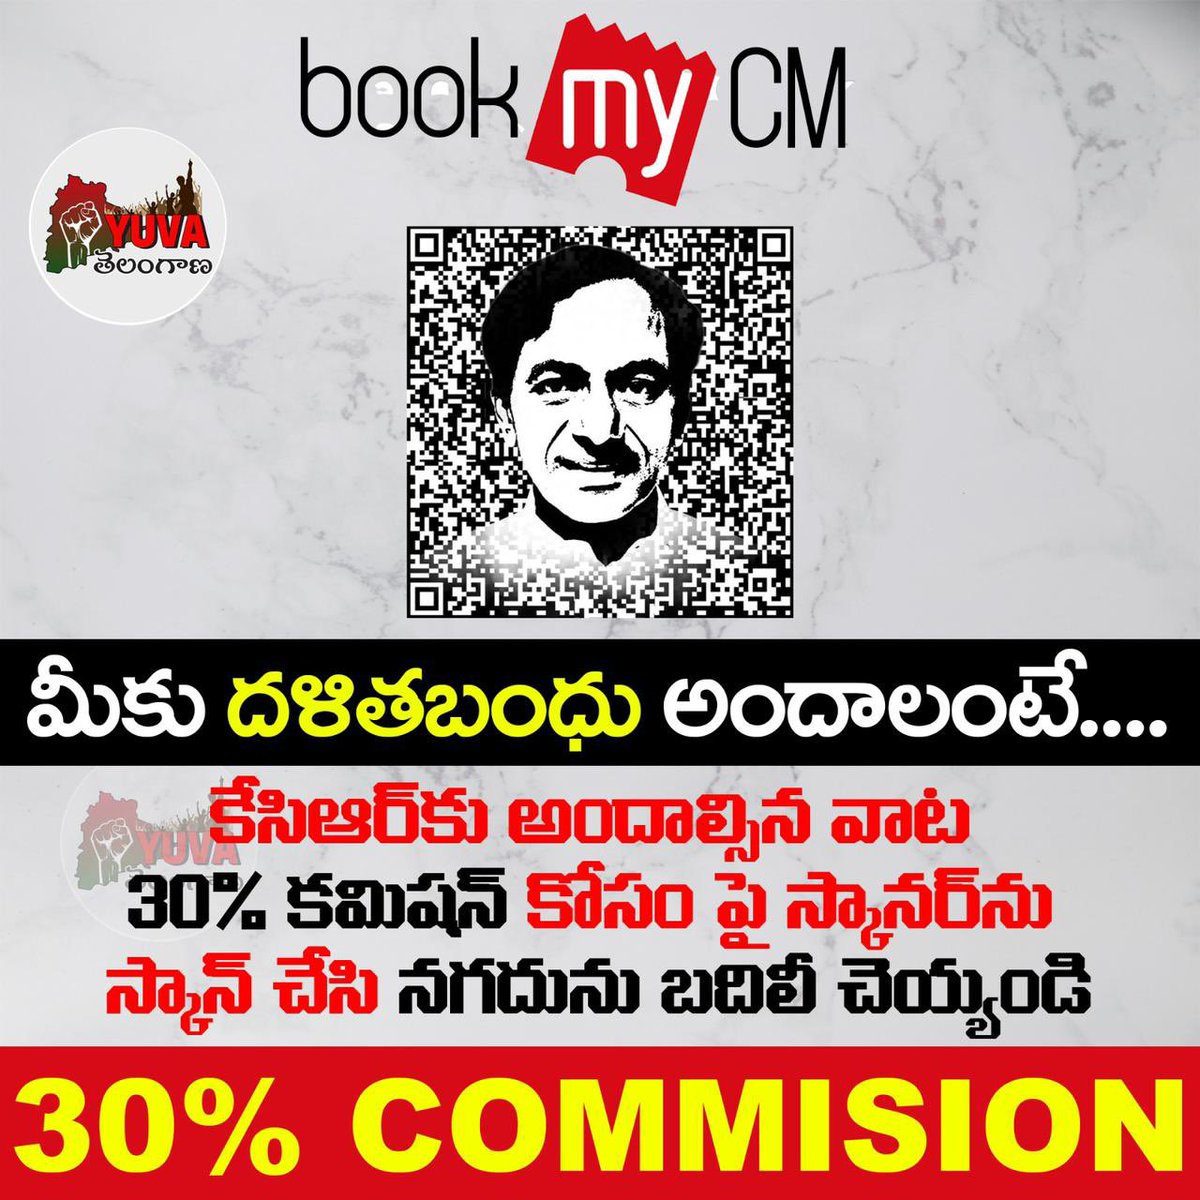 Best known name of 30% commission of Rao’s family 

Chandrashekar Rao #Farmhousecm
#ktr Rama          Rao #rakulrao 
Kavitha                Rao #liqourscam 
Harish                  Rao Medak #keep 
Santosh              Rao  cm’s #broker 
Kanna                   Rao cm’s #rowdy